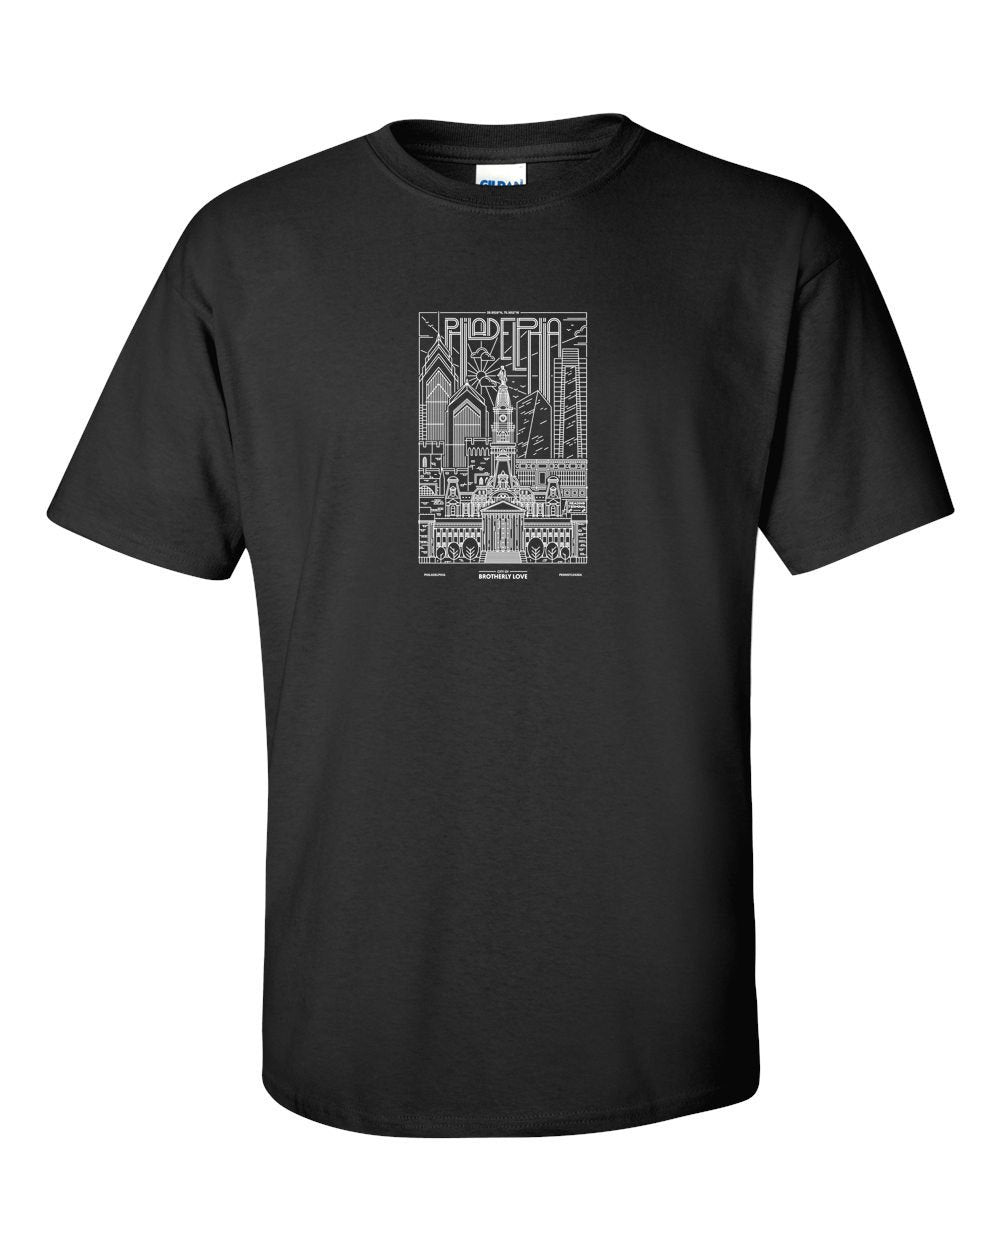 Philadelphia Skyline V2 (White Ink On Black) Mens/Unisex T-Shirt